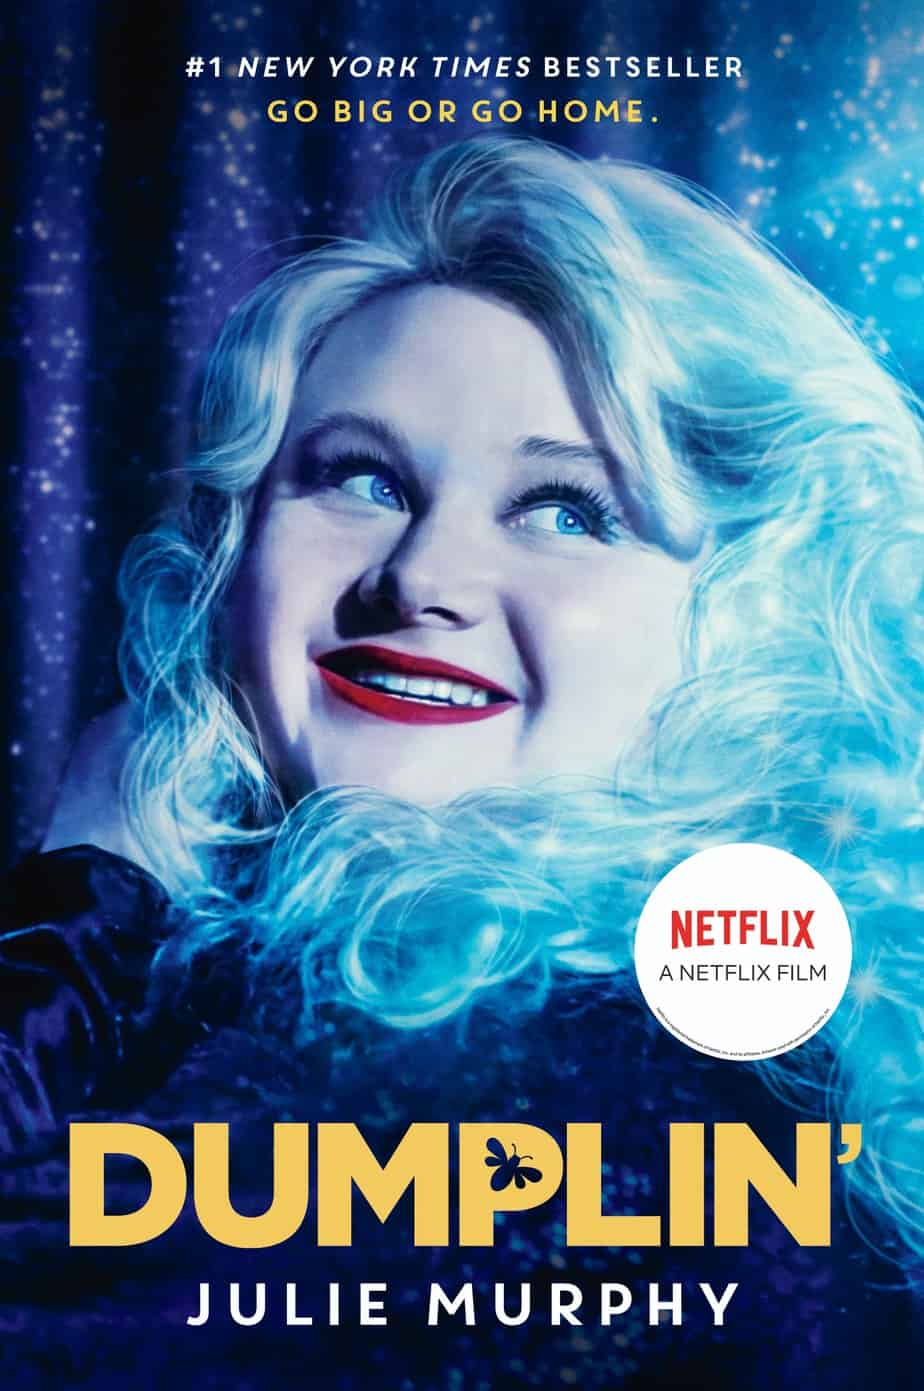 Dumplin movie poster